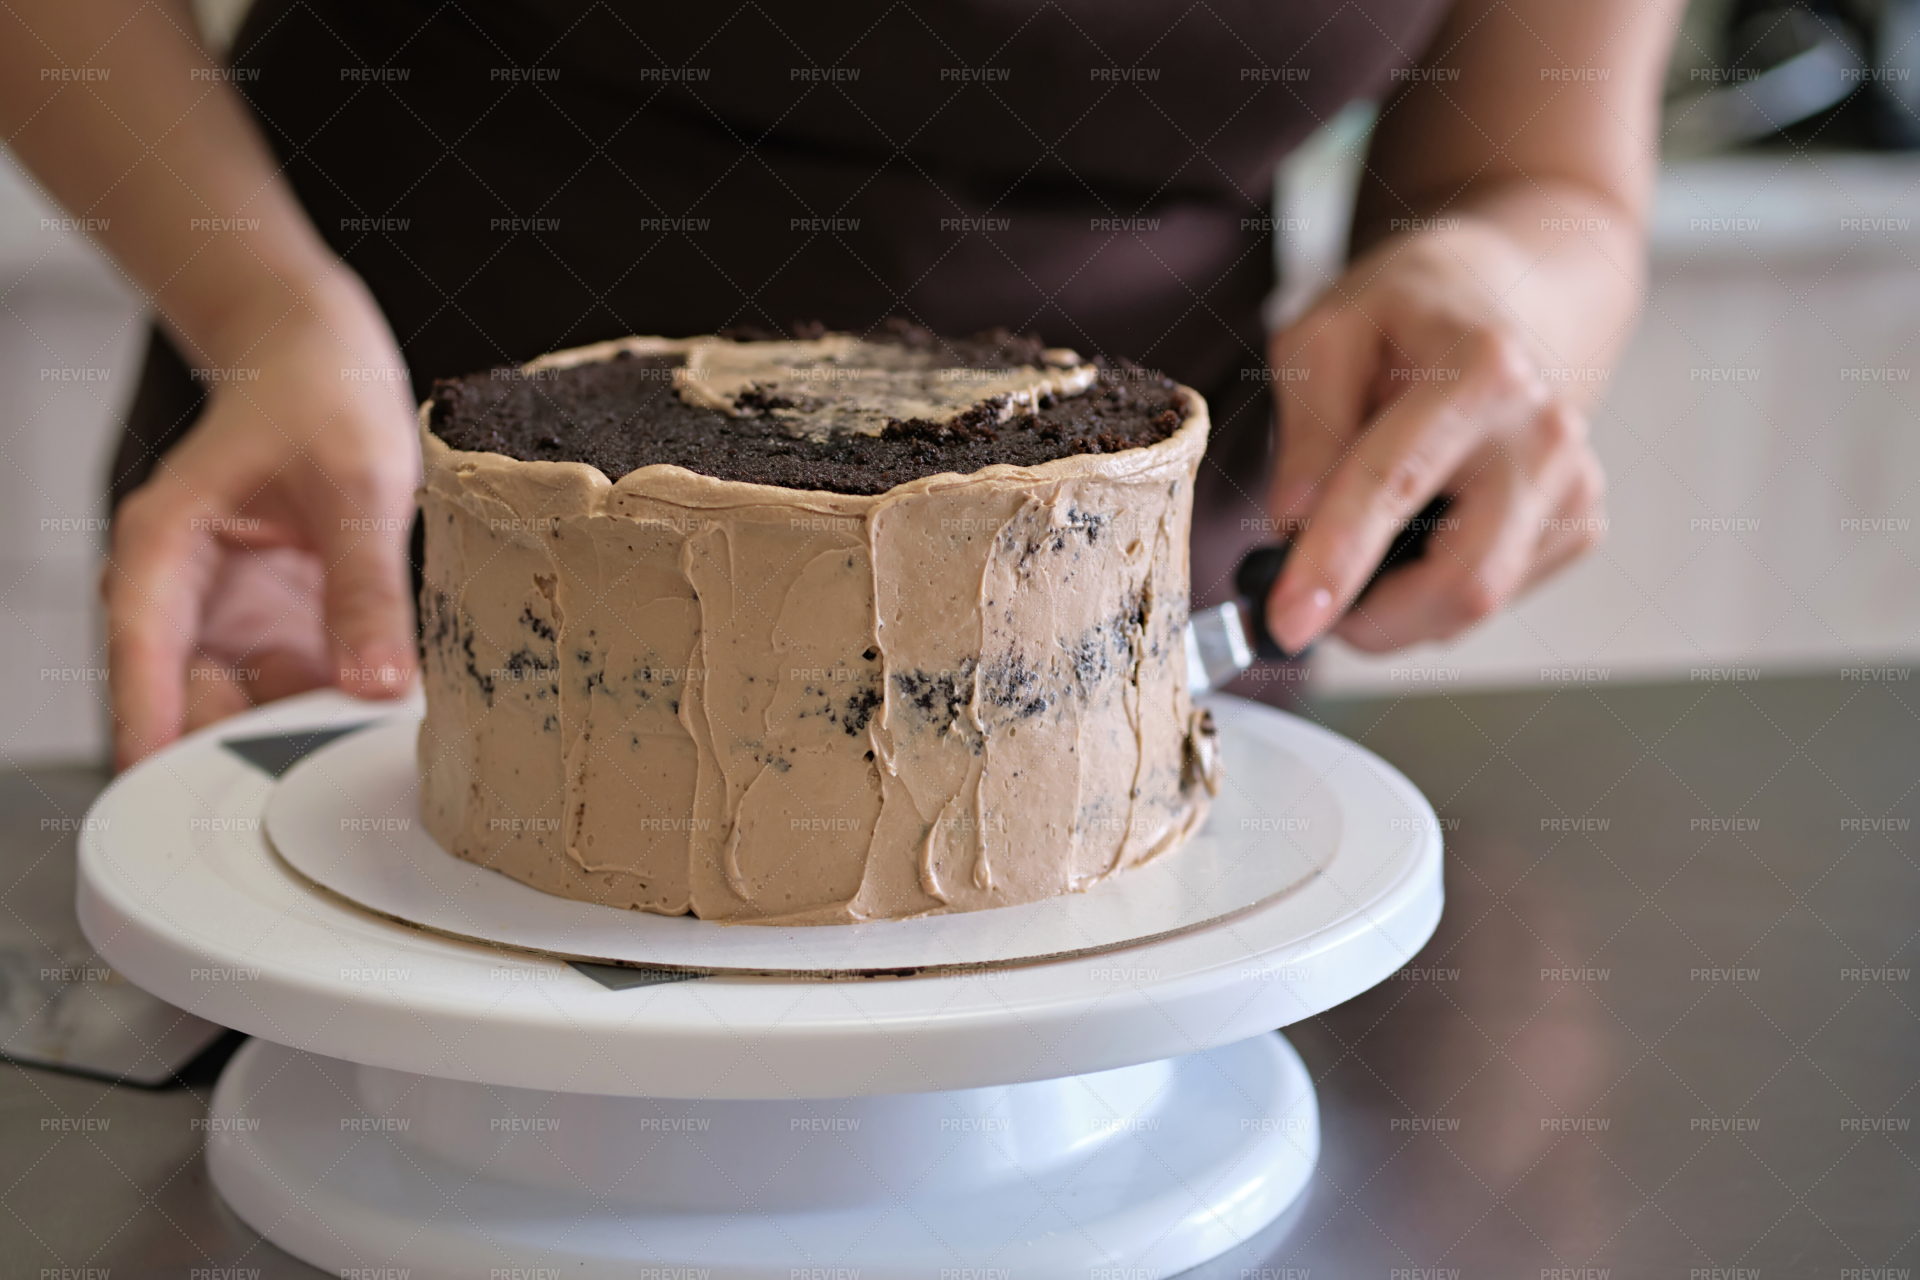 जानिए कैसे घर बैठे शुरू करें Cake Business, जितना टेस्टी केक उतनी ज्यादा  होगी आपकी कमाई